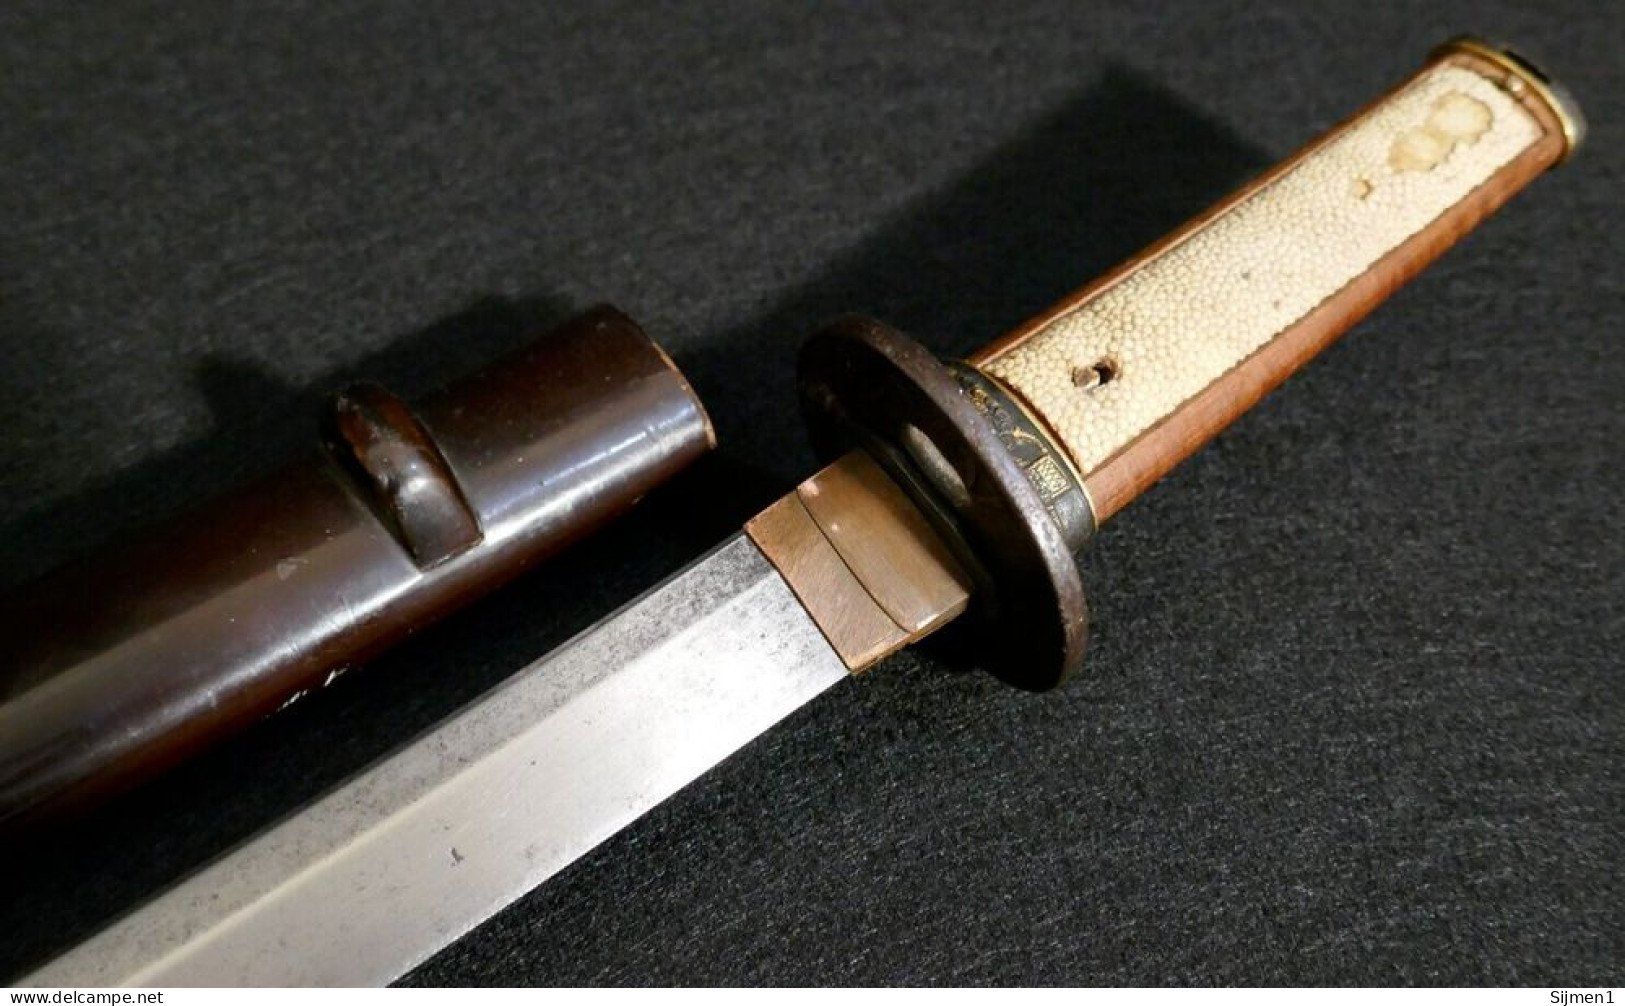 Raccords et supports de la famille des épées Wakizashi japonaises antiques - Or embelli